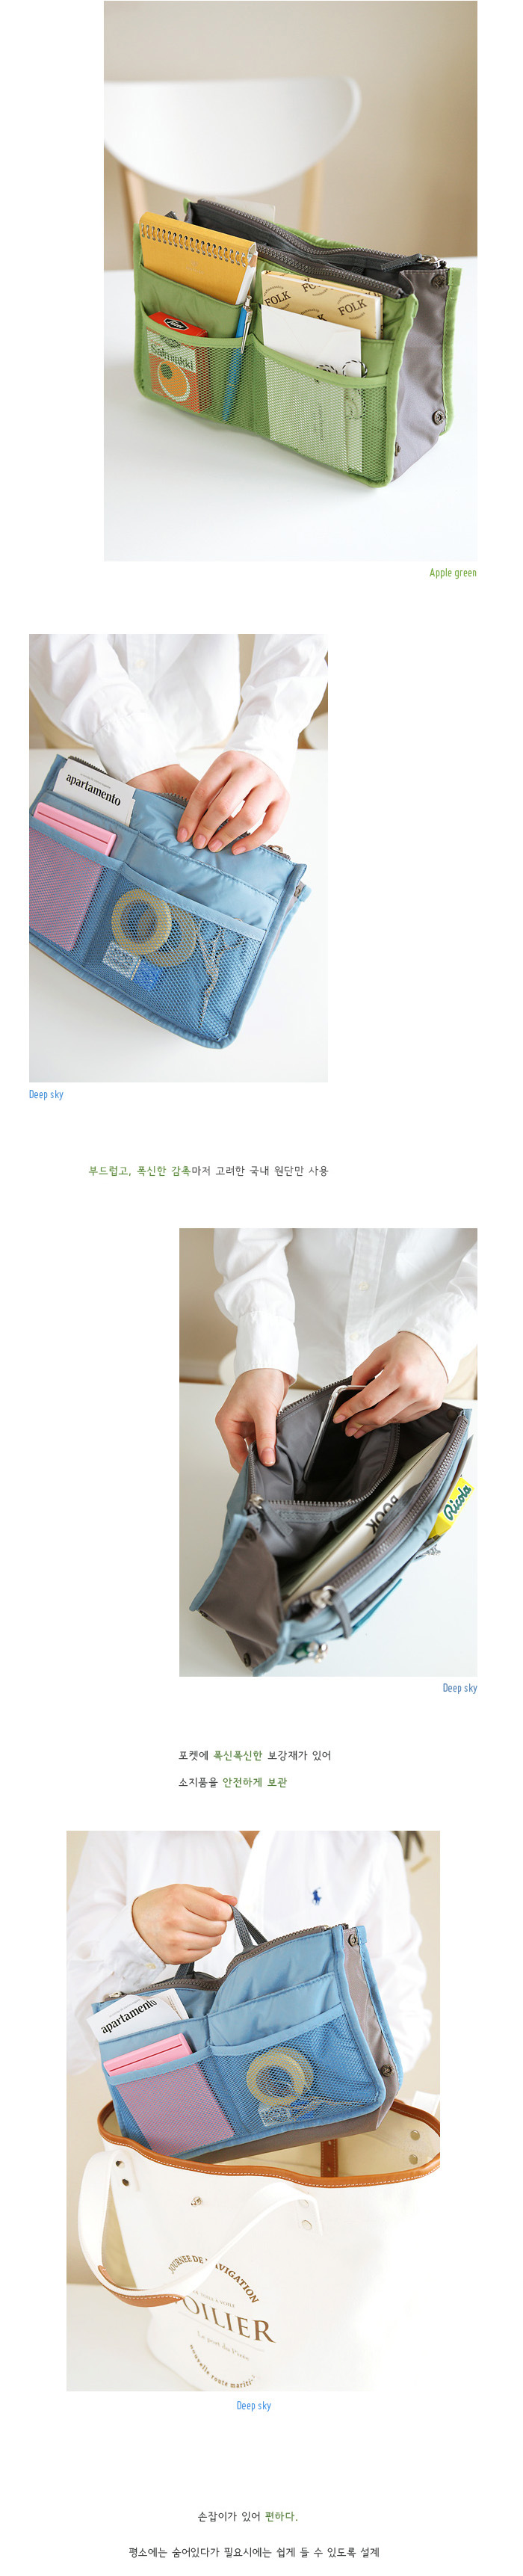 韩国包中包 双拉链收纳包 包中包收纳整理袋 化妆包 大号  RJDZ